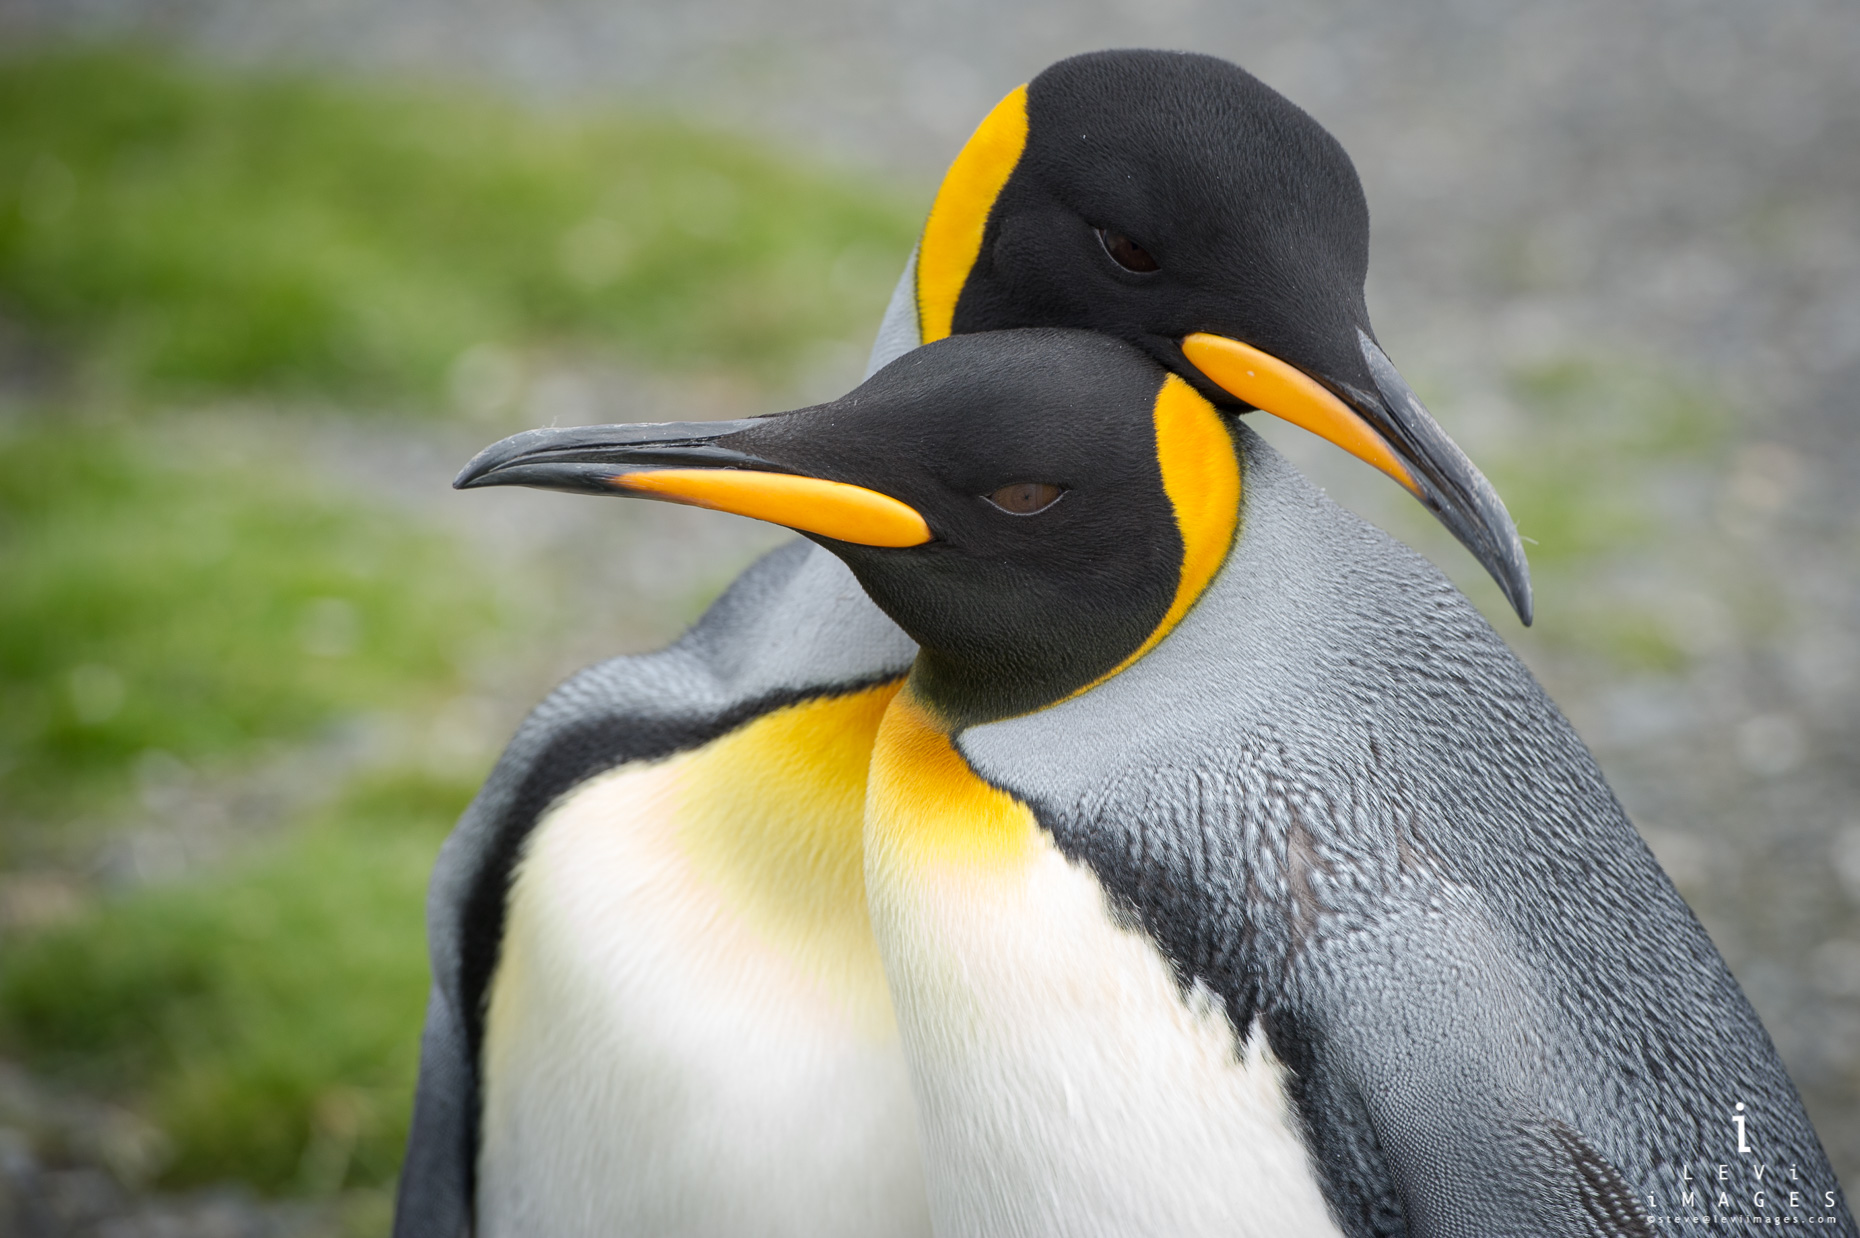 King penguin (Aptenodytes patagonicus) pair displaying courting behavior, South Georgia Island